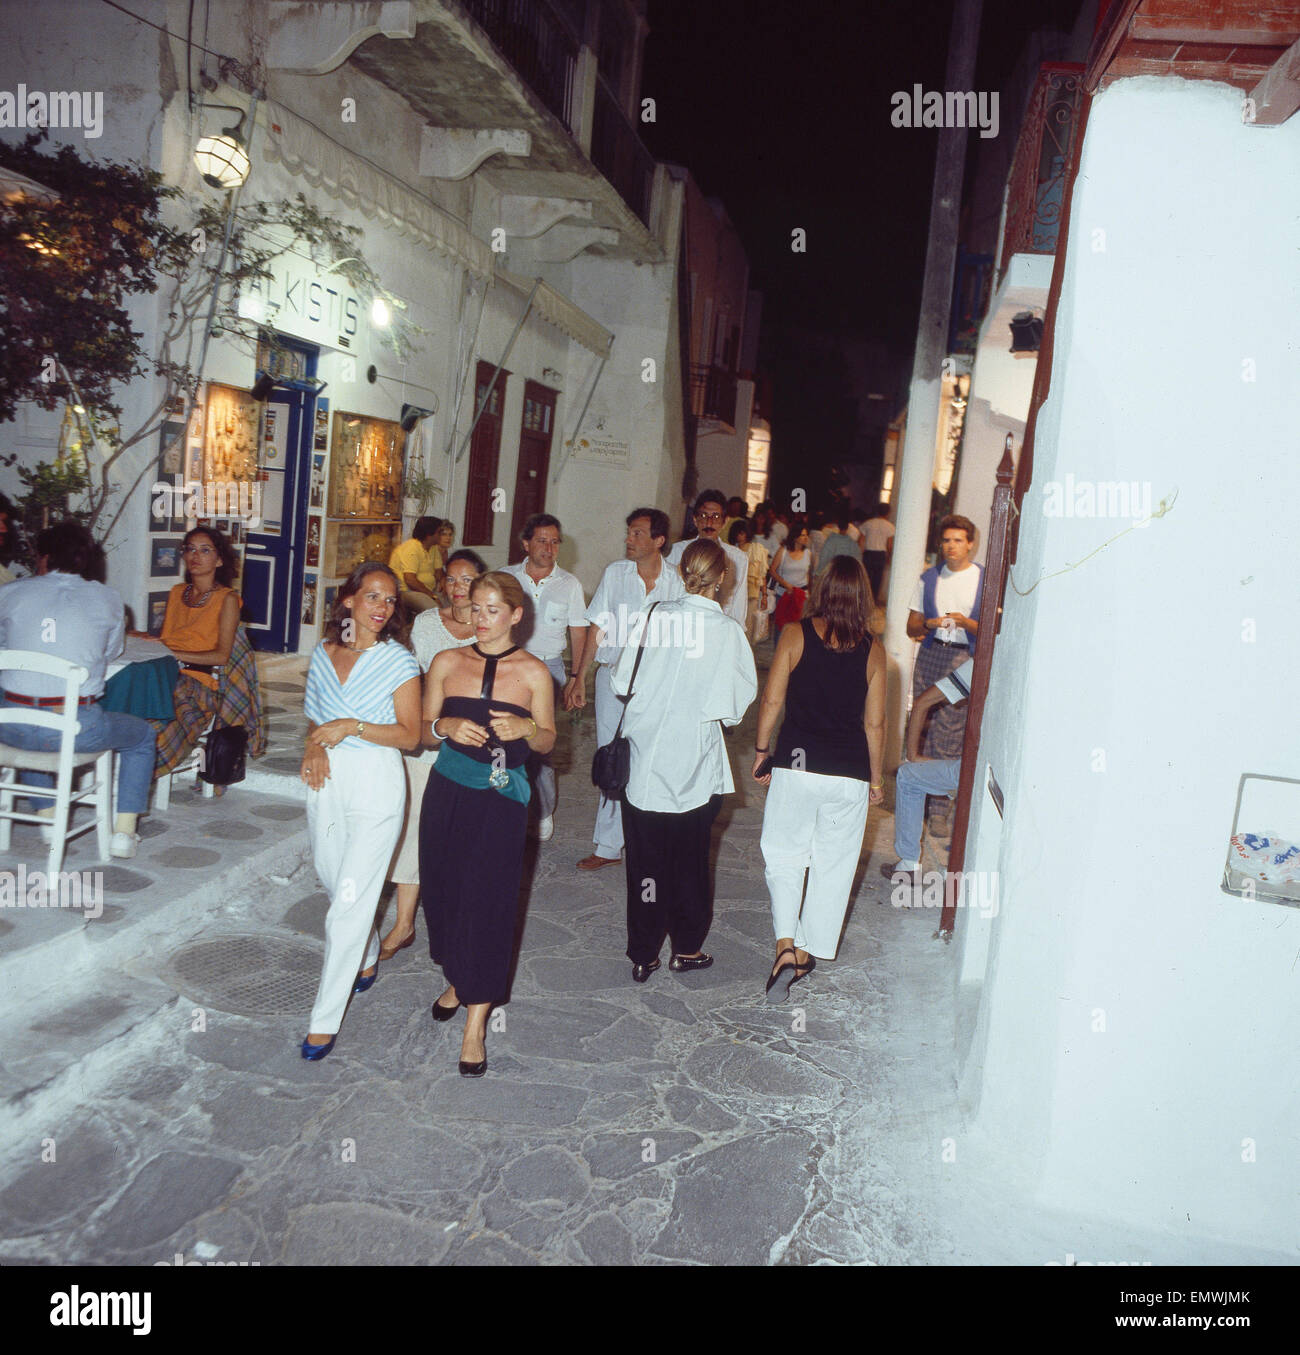 Griechenland, Kykladen, Insel Mykonos, Stadt Mykonos, Gasse mit Touristen, Nachtaufnahme Stock Photo